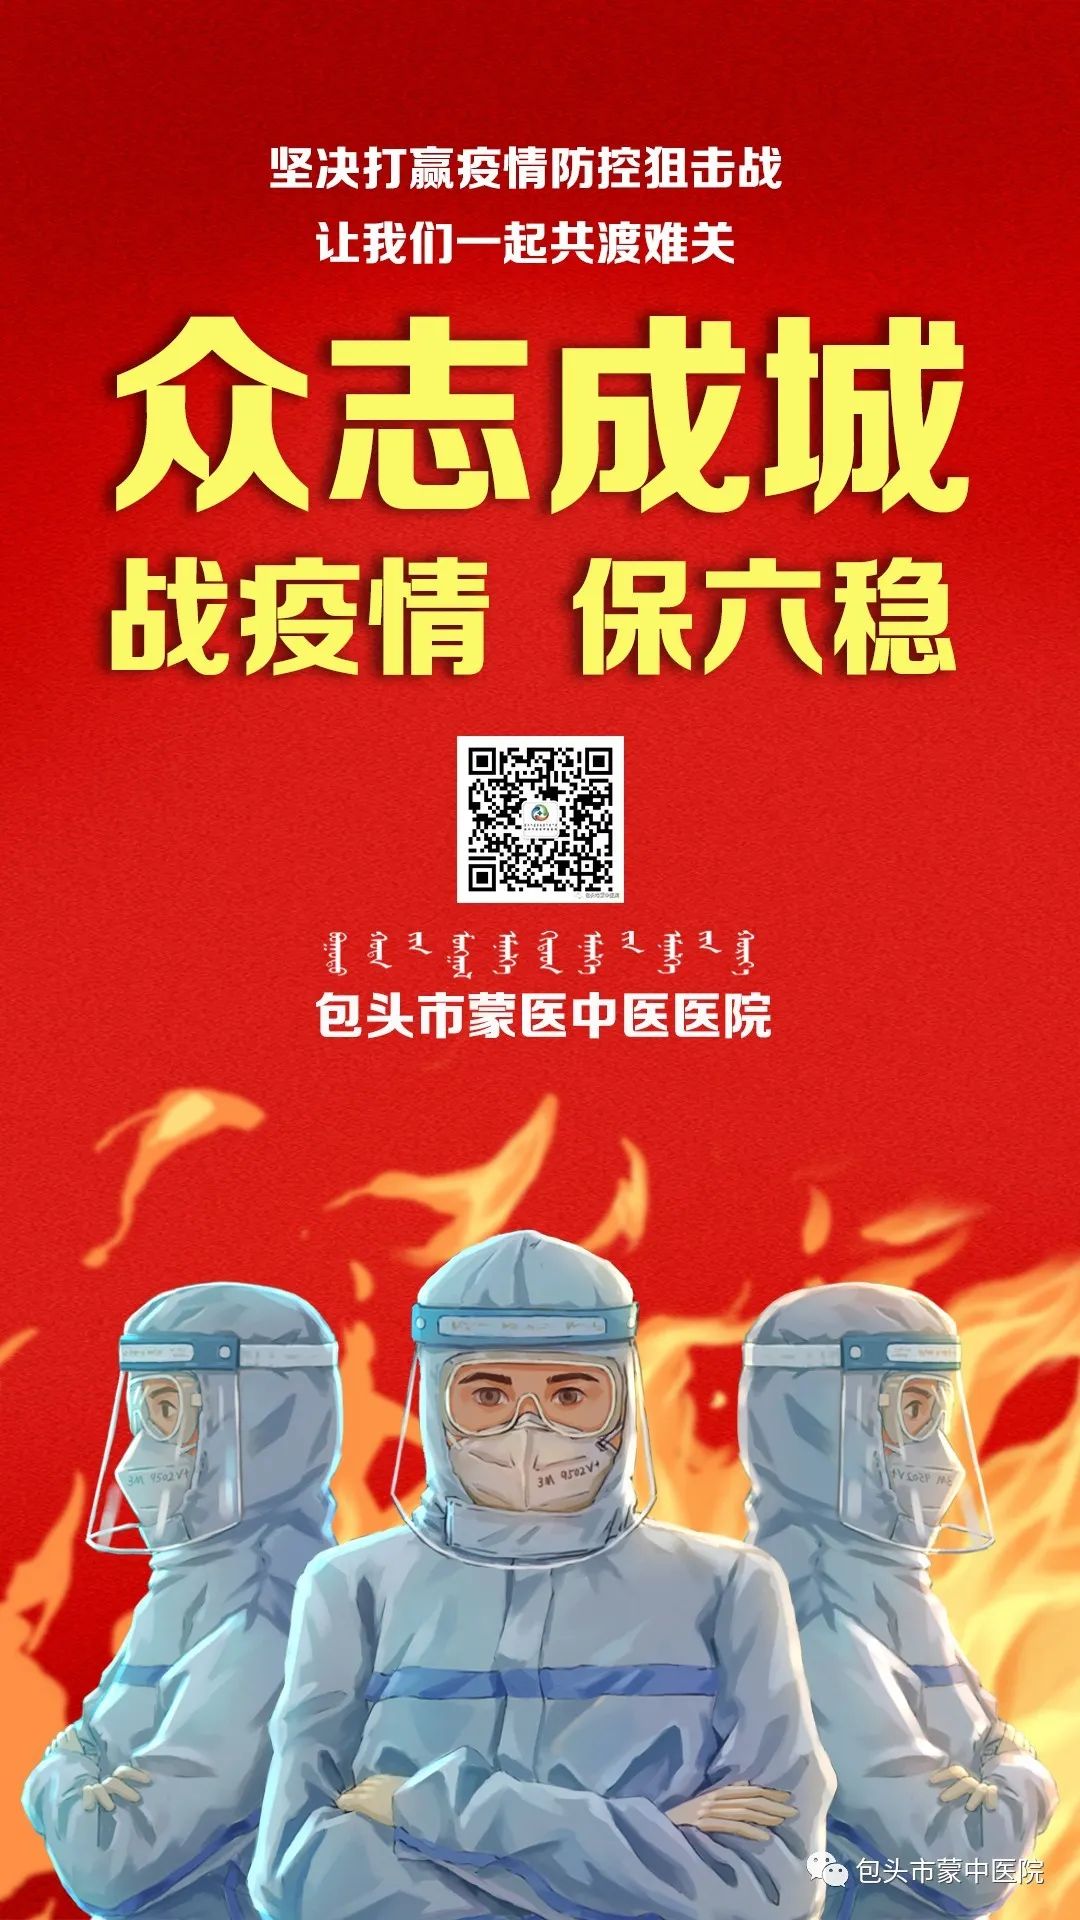 市蒙中医院4名医务工作者赴京  打响“北京保卫战”